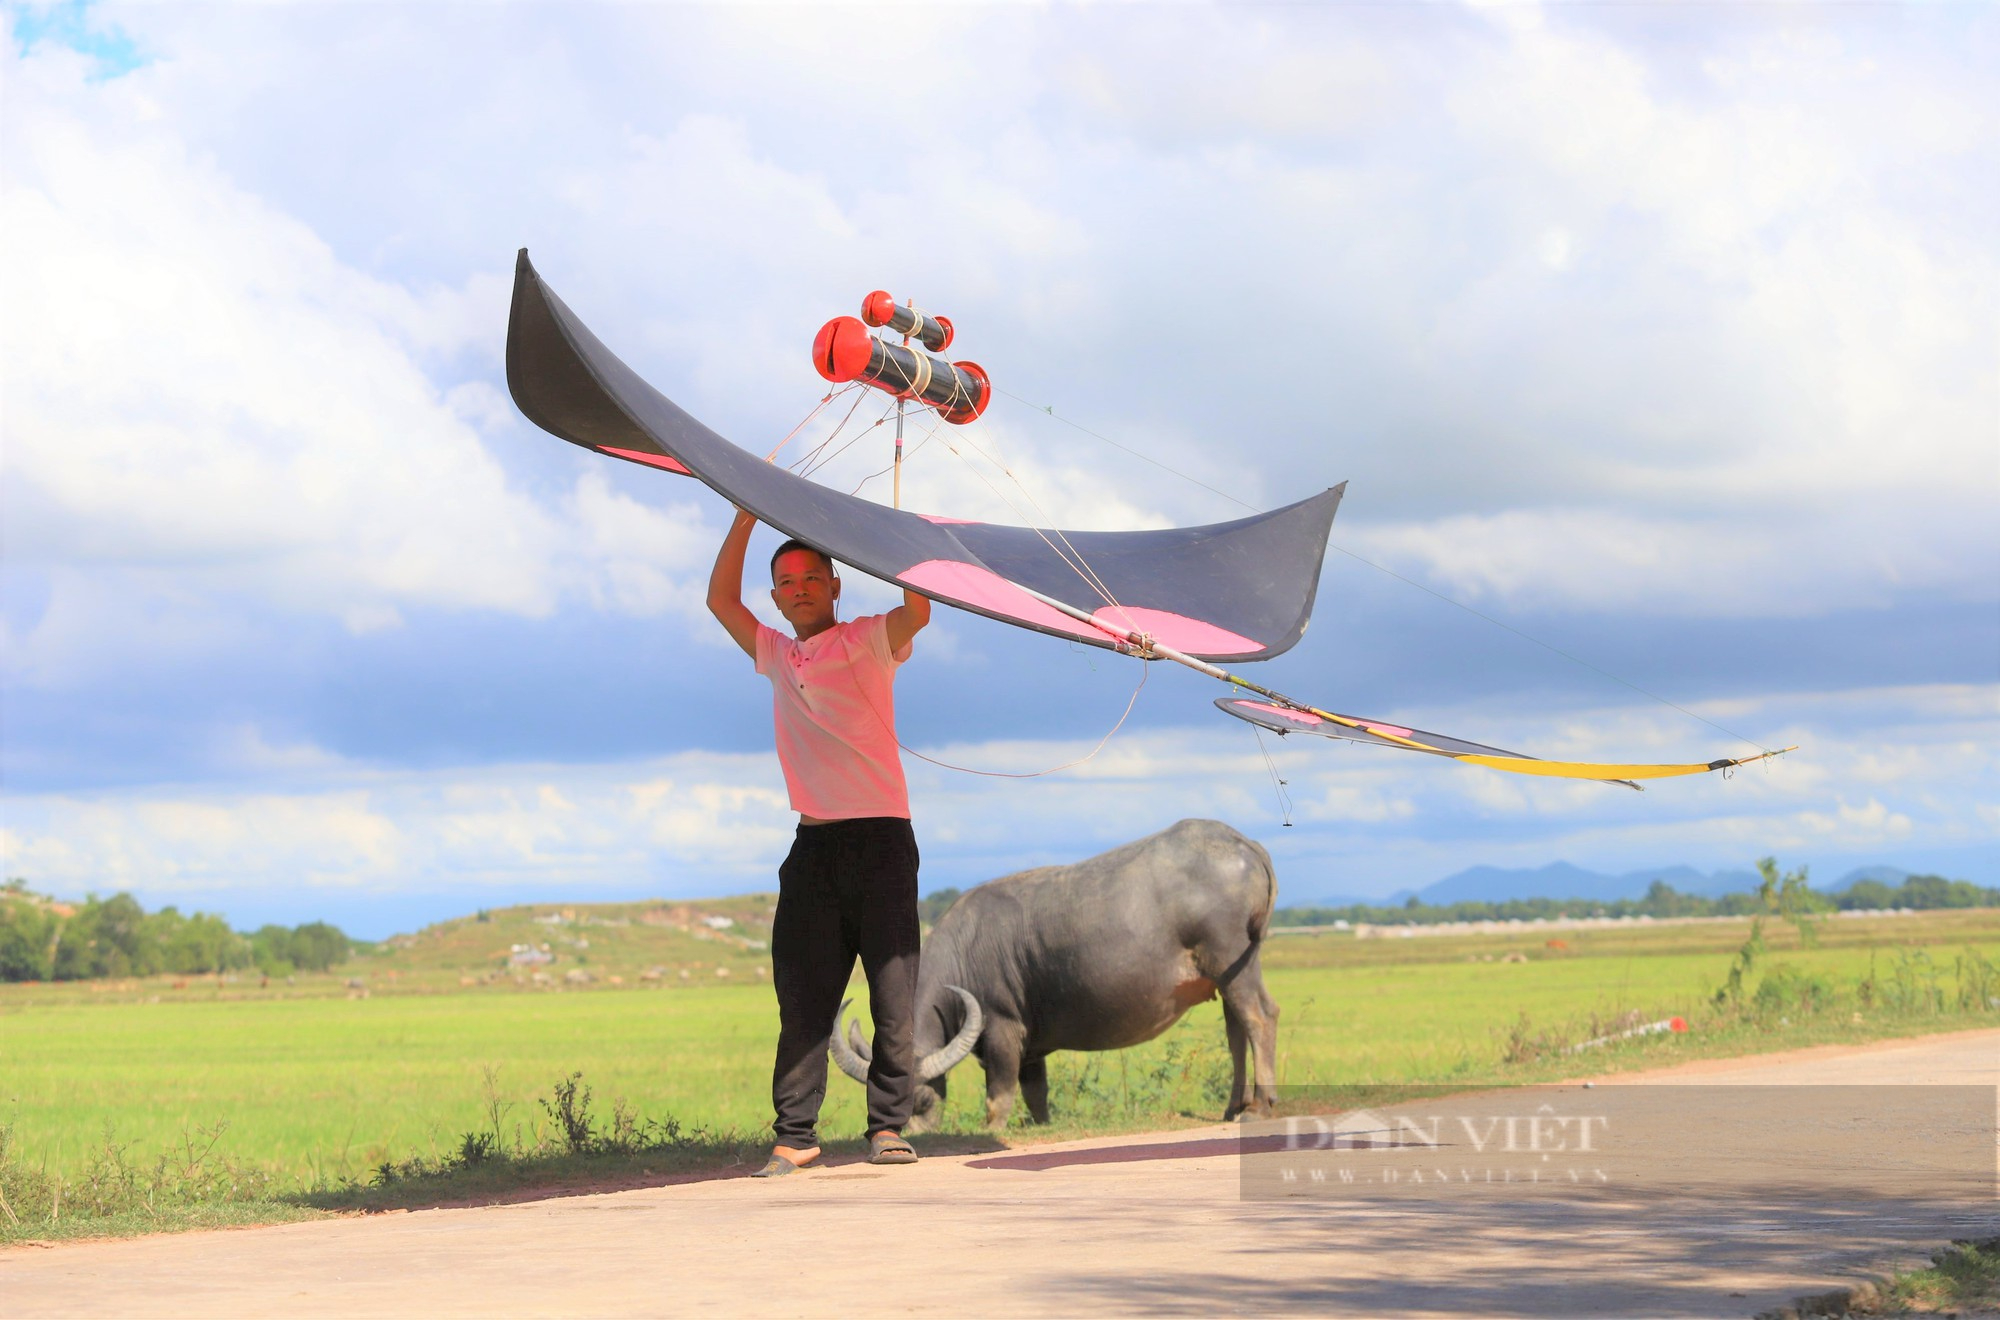 Hãy thưởng thức hình ảnh về diều sáo Hương Sơn - một loại diều đẹp và phổ biến tại khu vực miền Trung. Với hình dáng như một con bướm đầy màu sắc, chiếc diều sáo này sẽ mang lại cho bạn những trải nghiệm tuyệt vời khi bay lên trời.